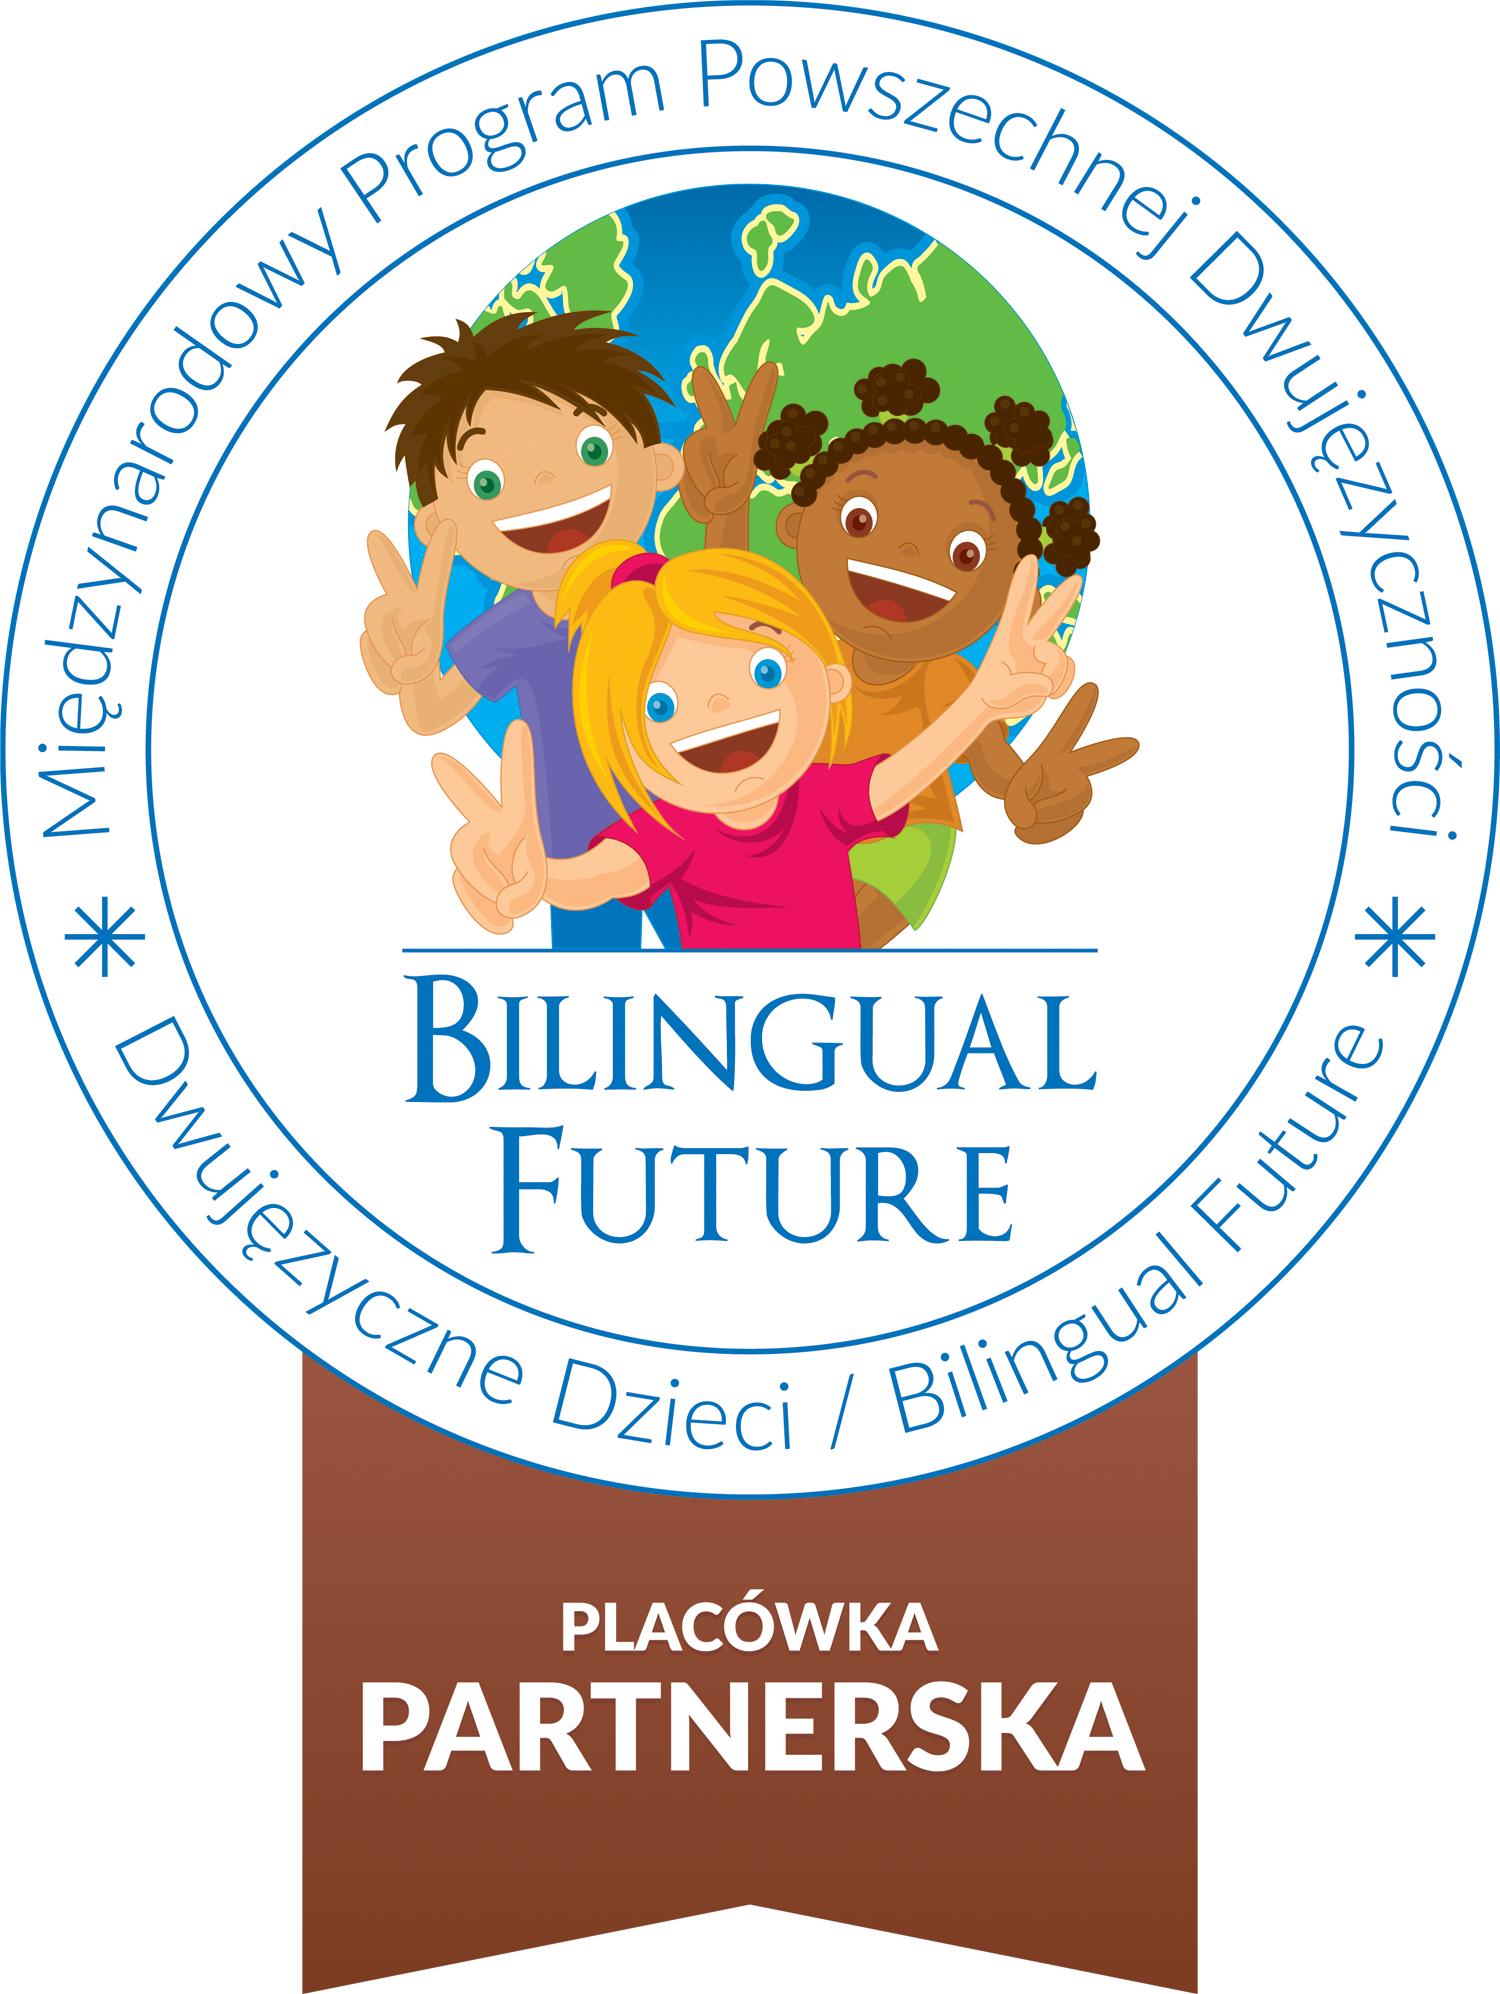 'Dwujęzyczne Dzieci' Międzynarodowy Progam Powszechnej Dwujęzyczności